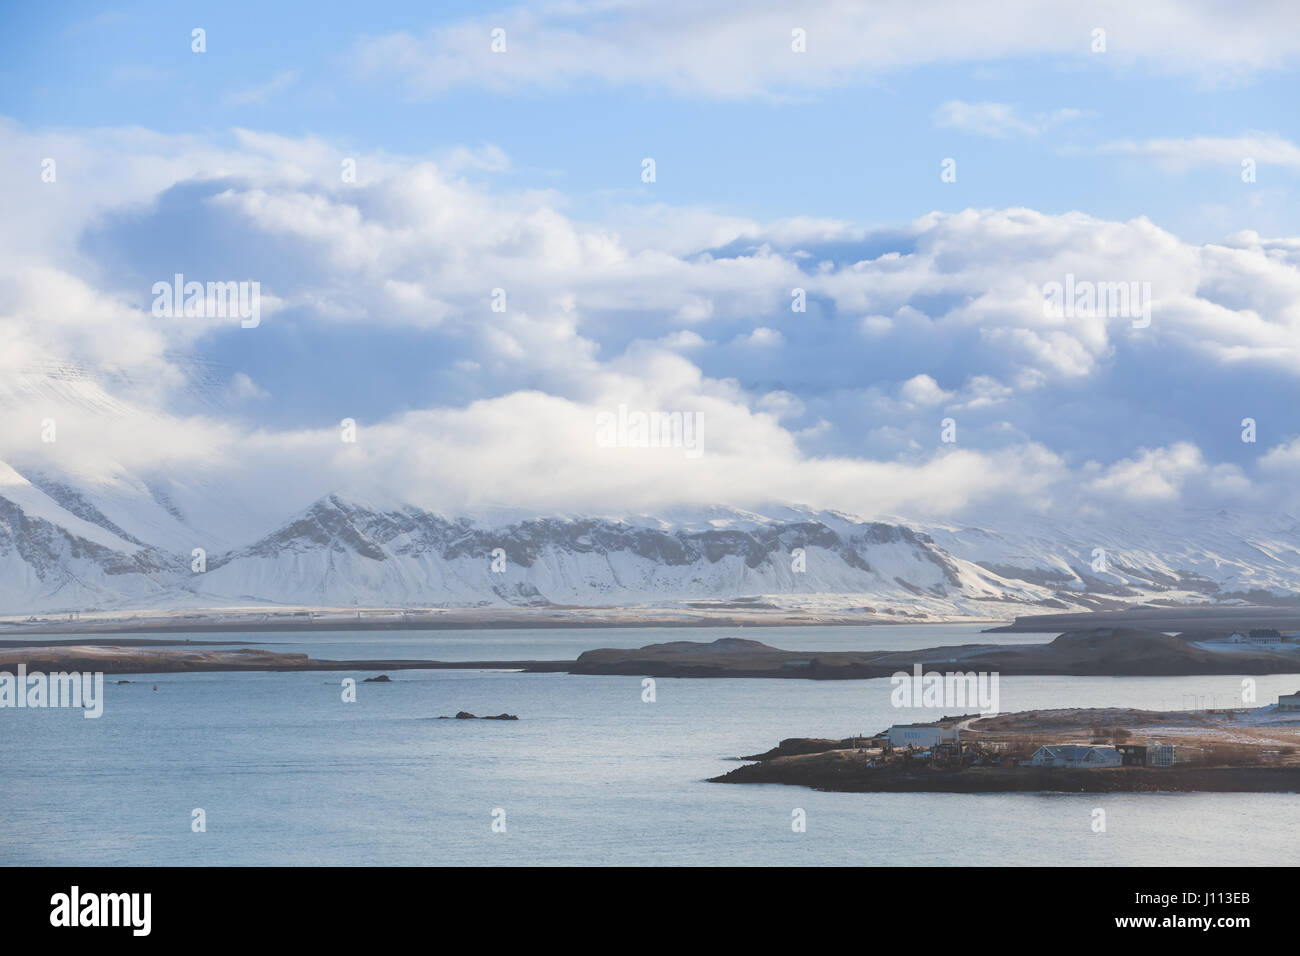 Paysage islandais côtières avec montagnes enneigées sous ciel nuageux. Baie de Reykjavik, Islande Banque D'Images